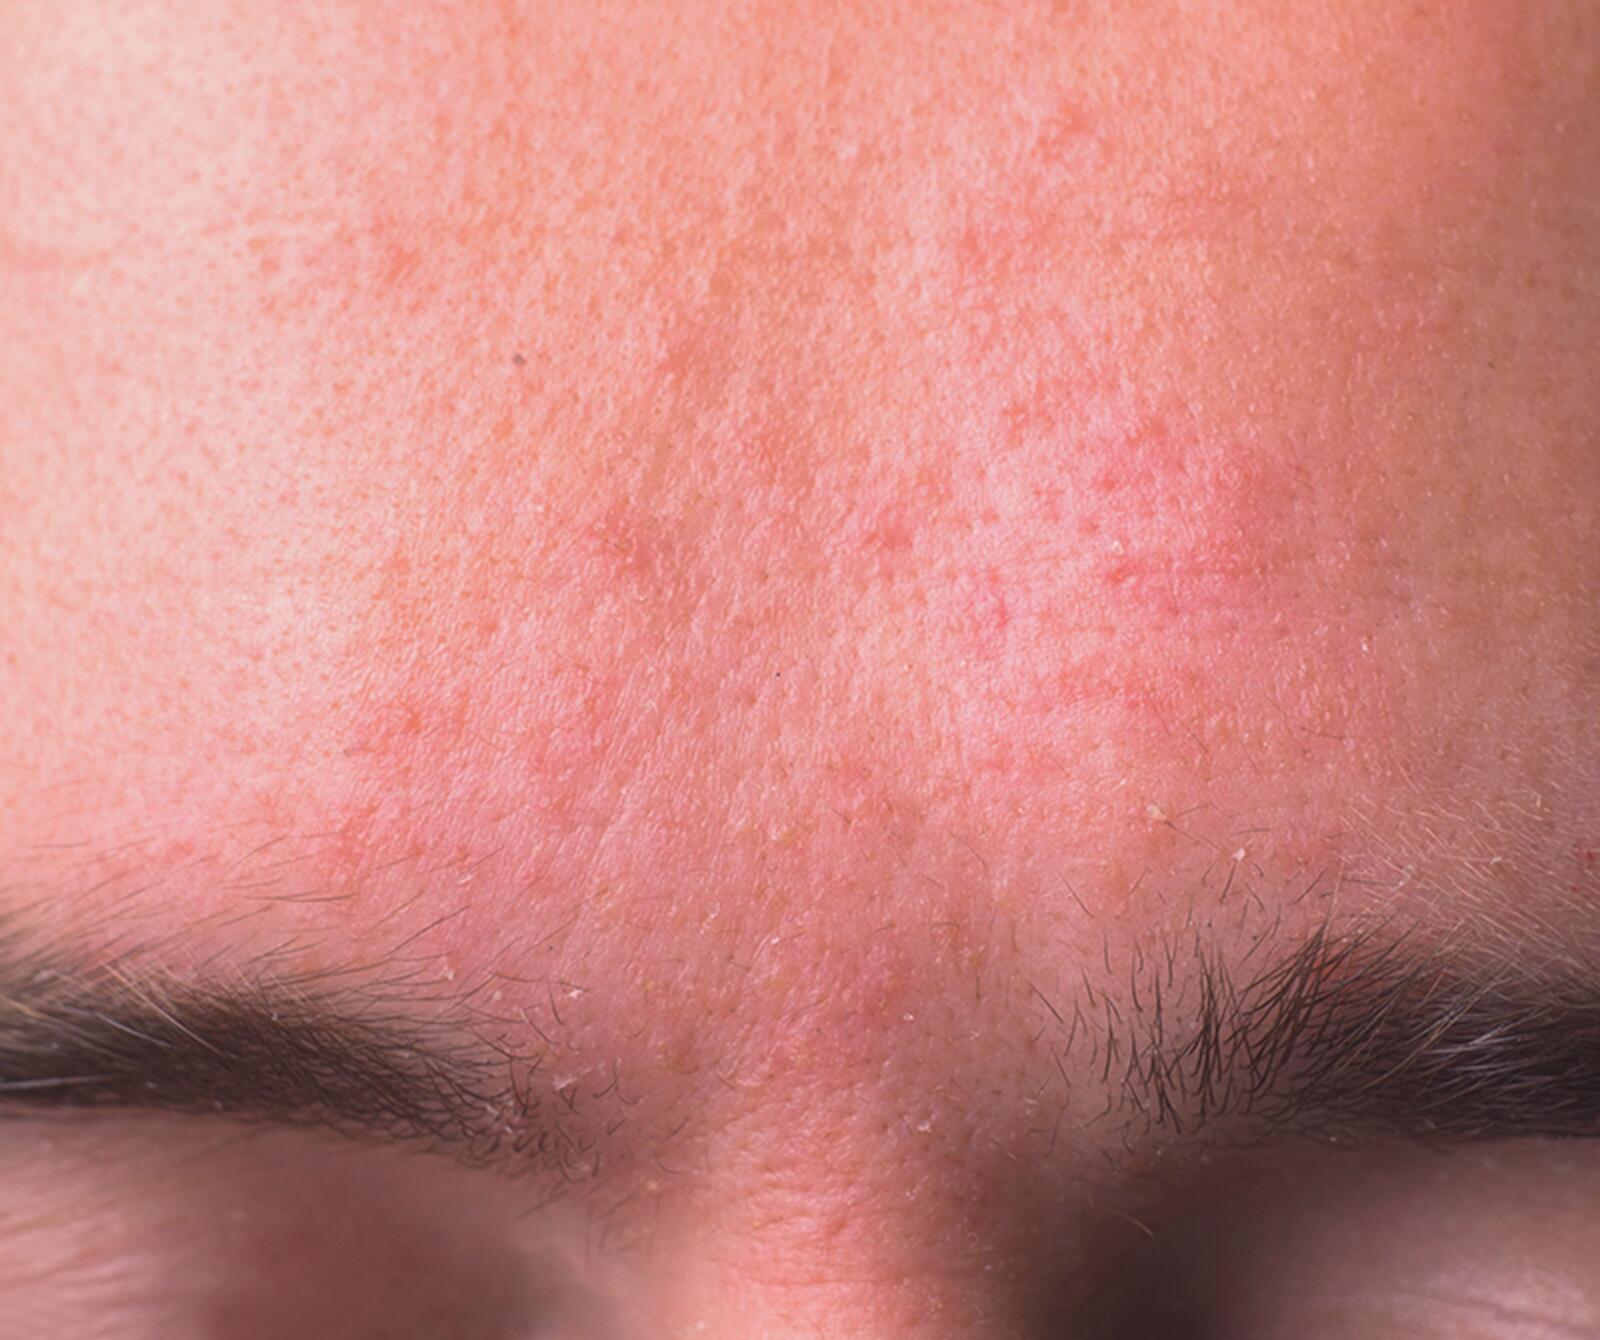 Ursache und Behandlungschancen der Hauterkrankung im Gesicht